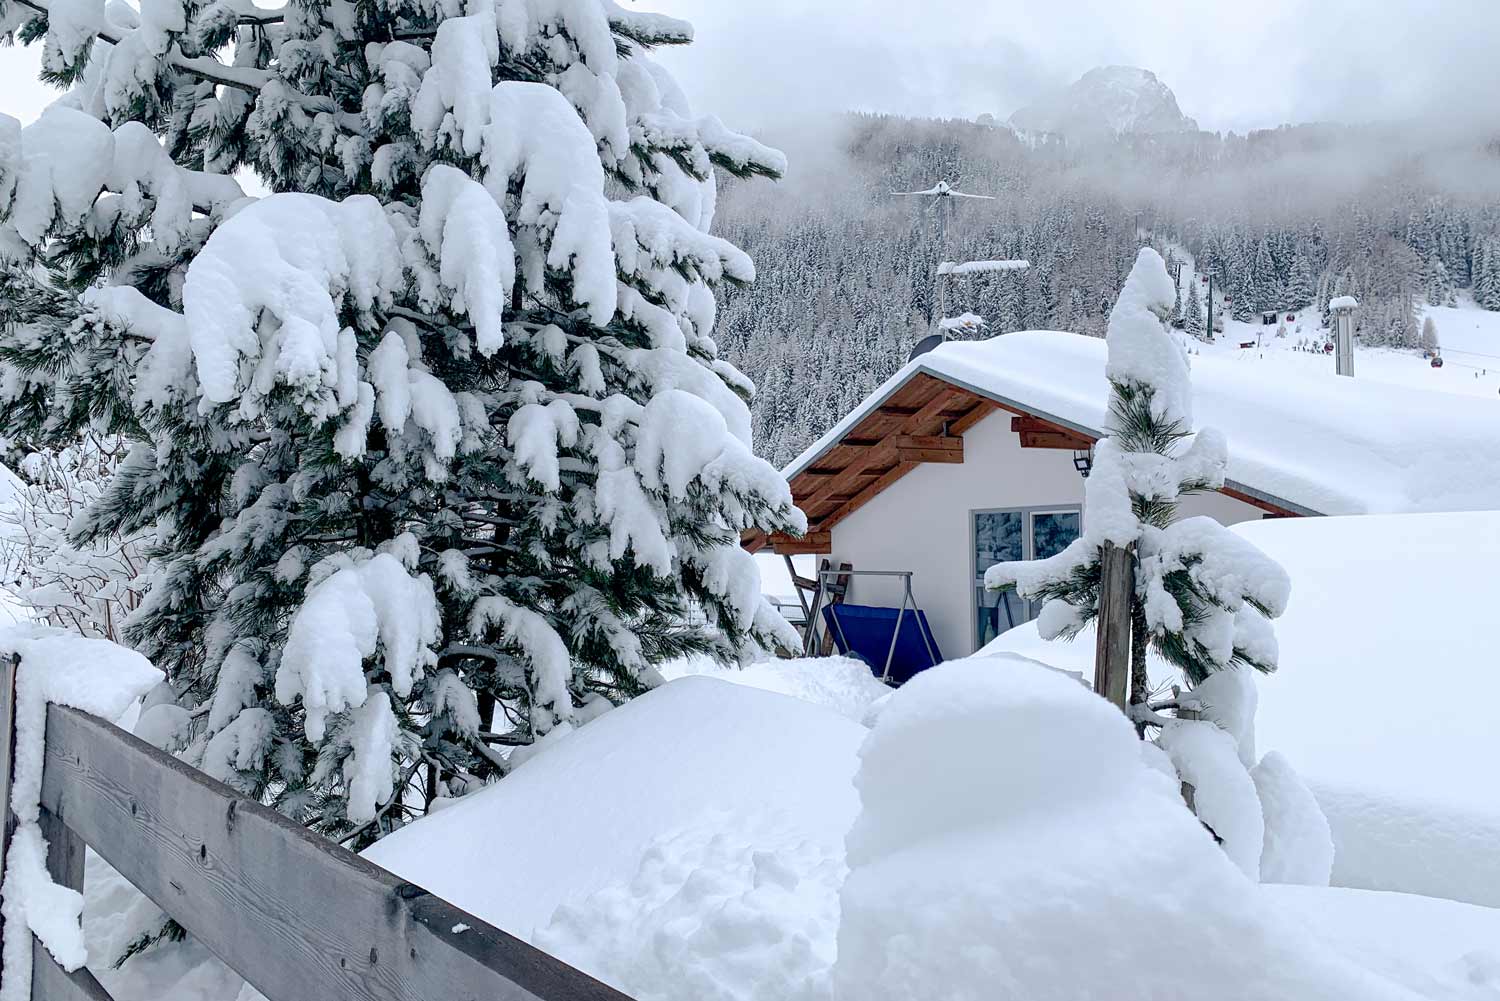 Sneeuwzekere skigebieden in de Alpen beschikken over voldoende sneeuw